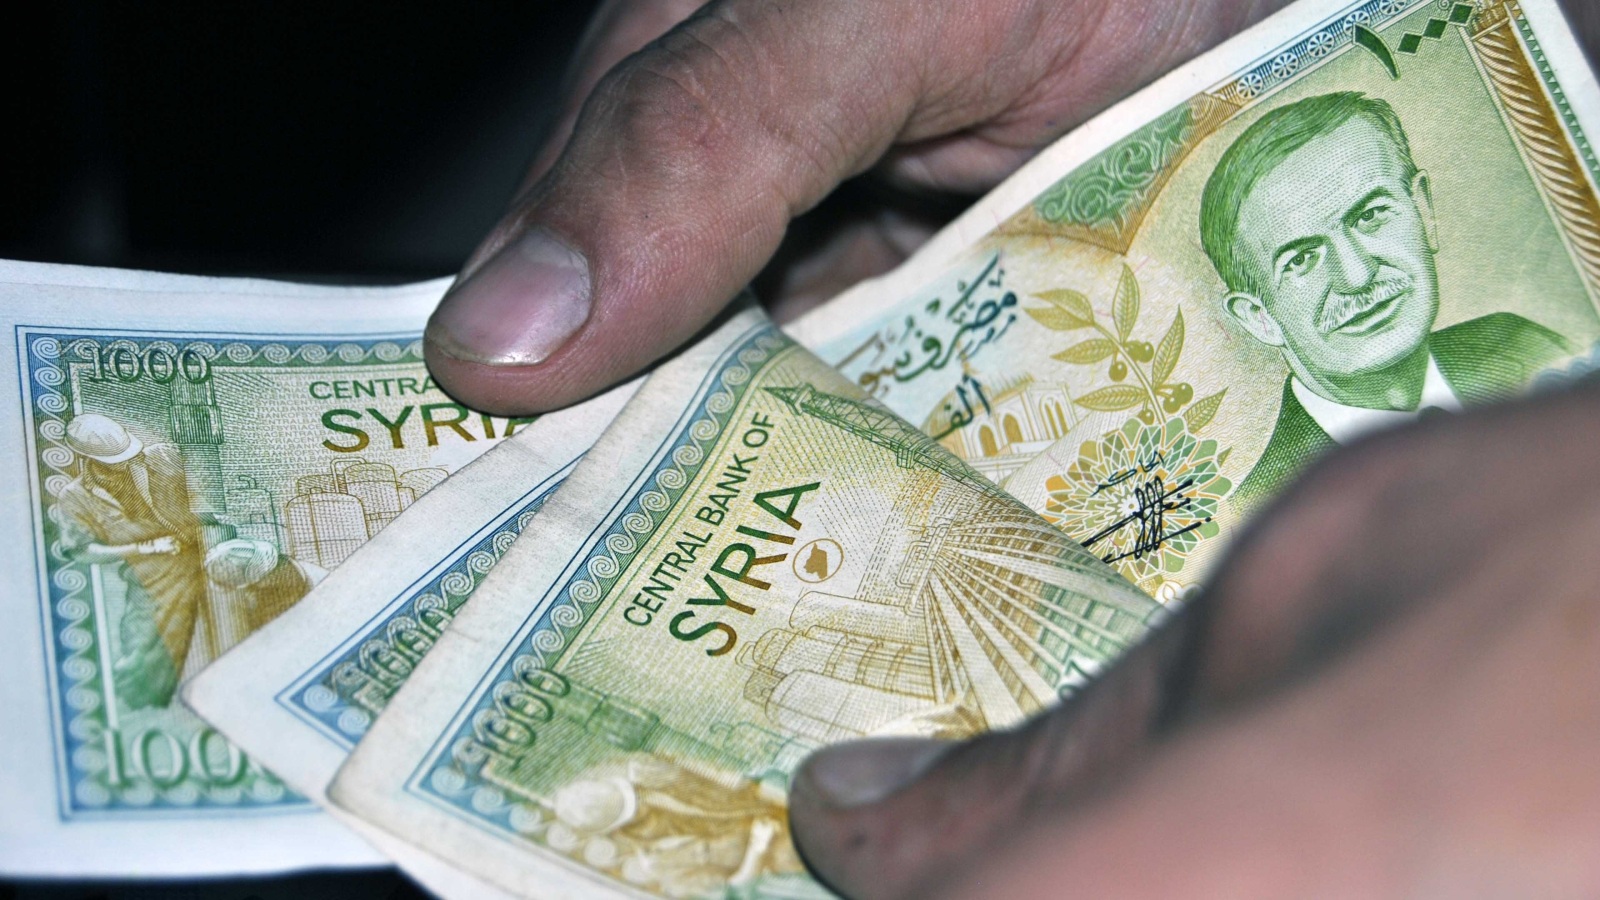 كثير من السوريين يعتمدون على تجار الشنطة لاستلام وتبديل العملات خشية التضييق الأمني(الجزيرة)